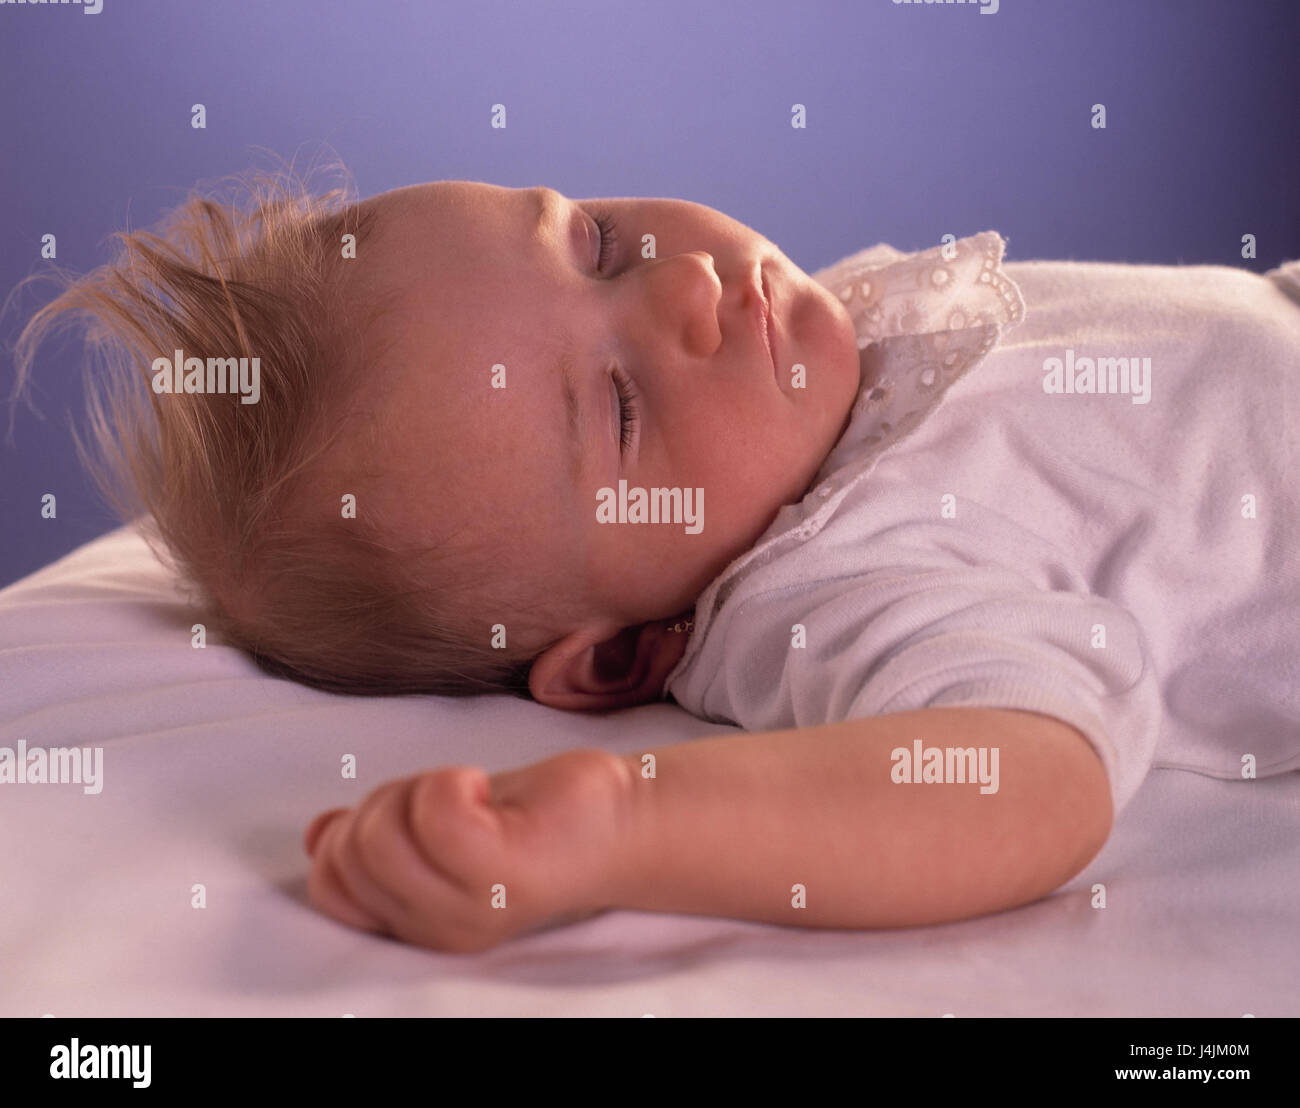 Letto, baby, Dormire Riposo bambino ritratto, infantile, ragazza bionda, orecchini, dormire, riposo, pacificamente Foto Stock